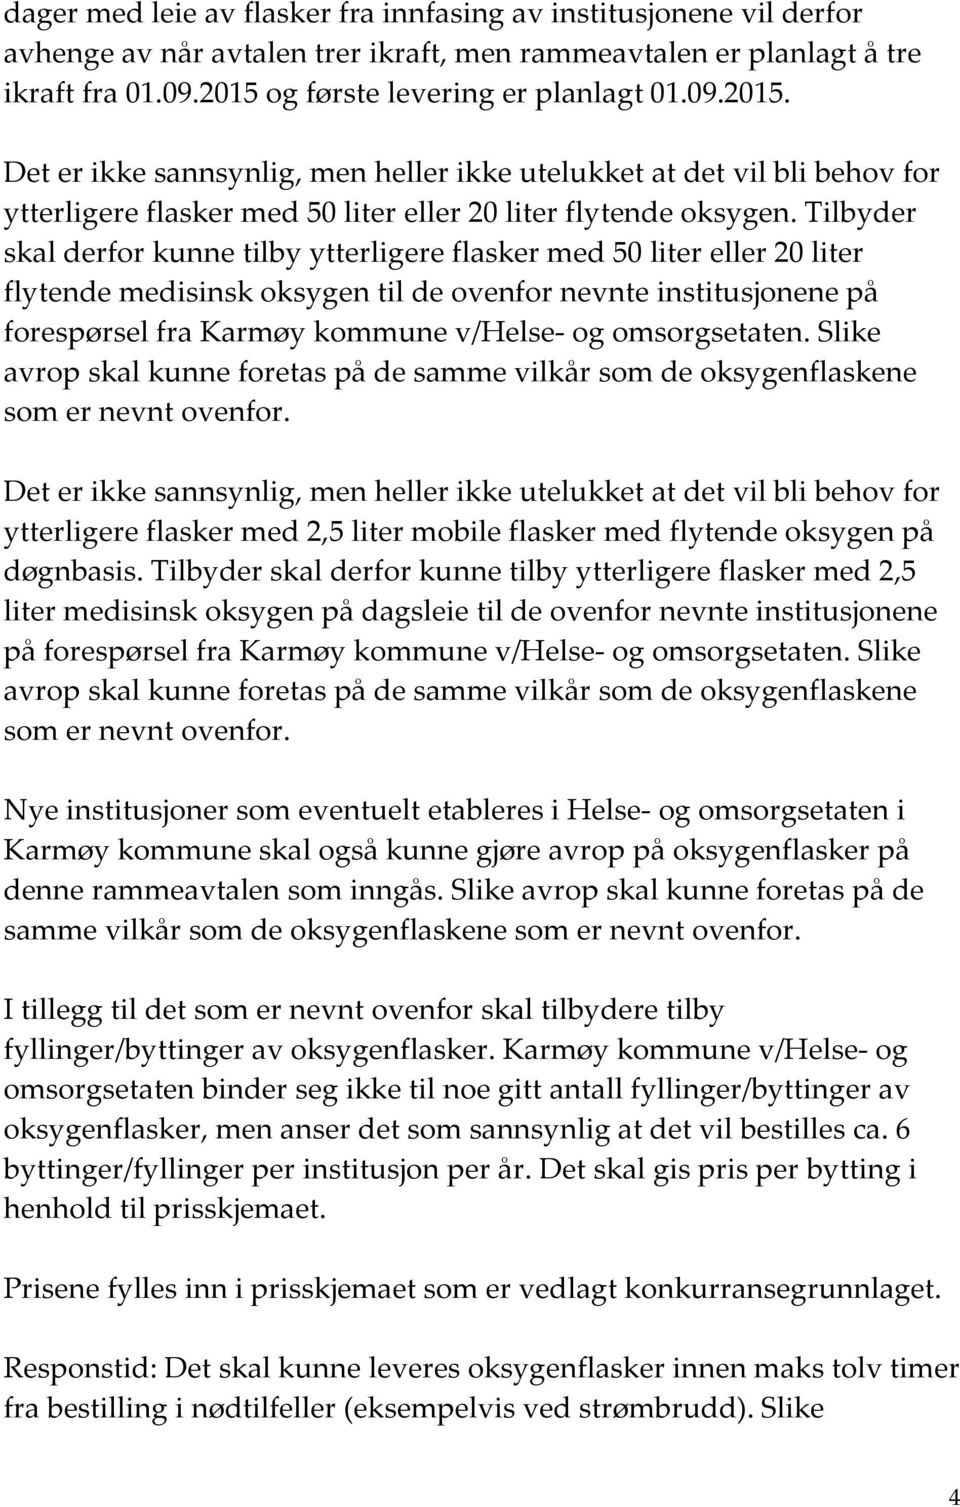 Tilbyder skal derfor kunne tilby ytterligere flasker med 50 liter eller 20 liter oksygen til de ovenfor nevnte institusjonene på forespørsel fra Karmøy kommune v/helse- og omsorgsetaten.